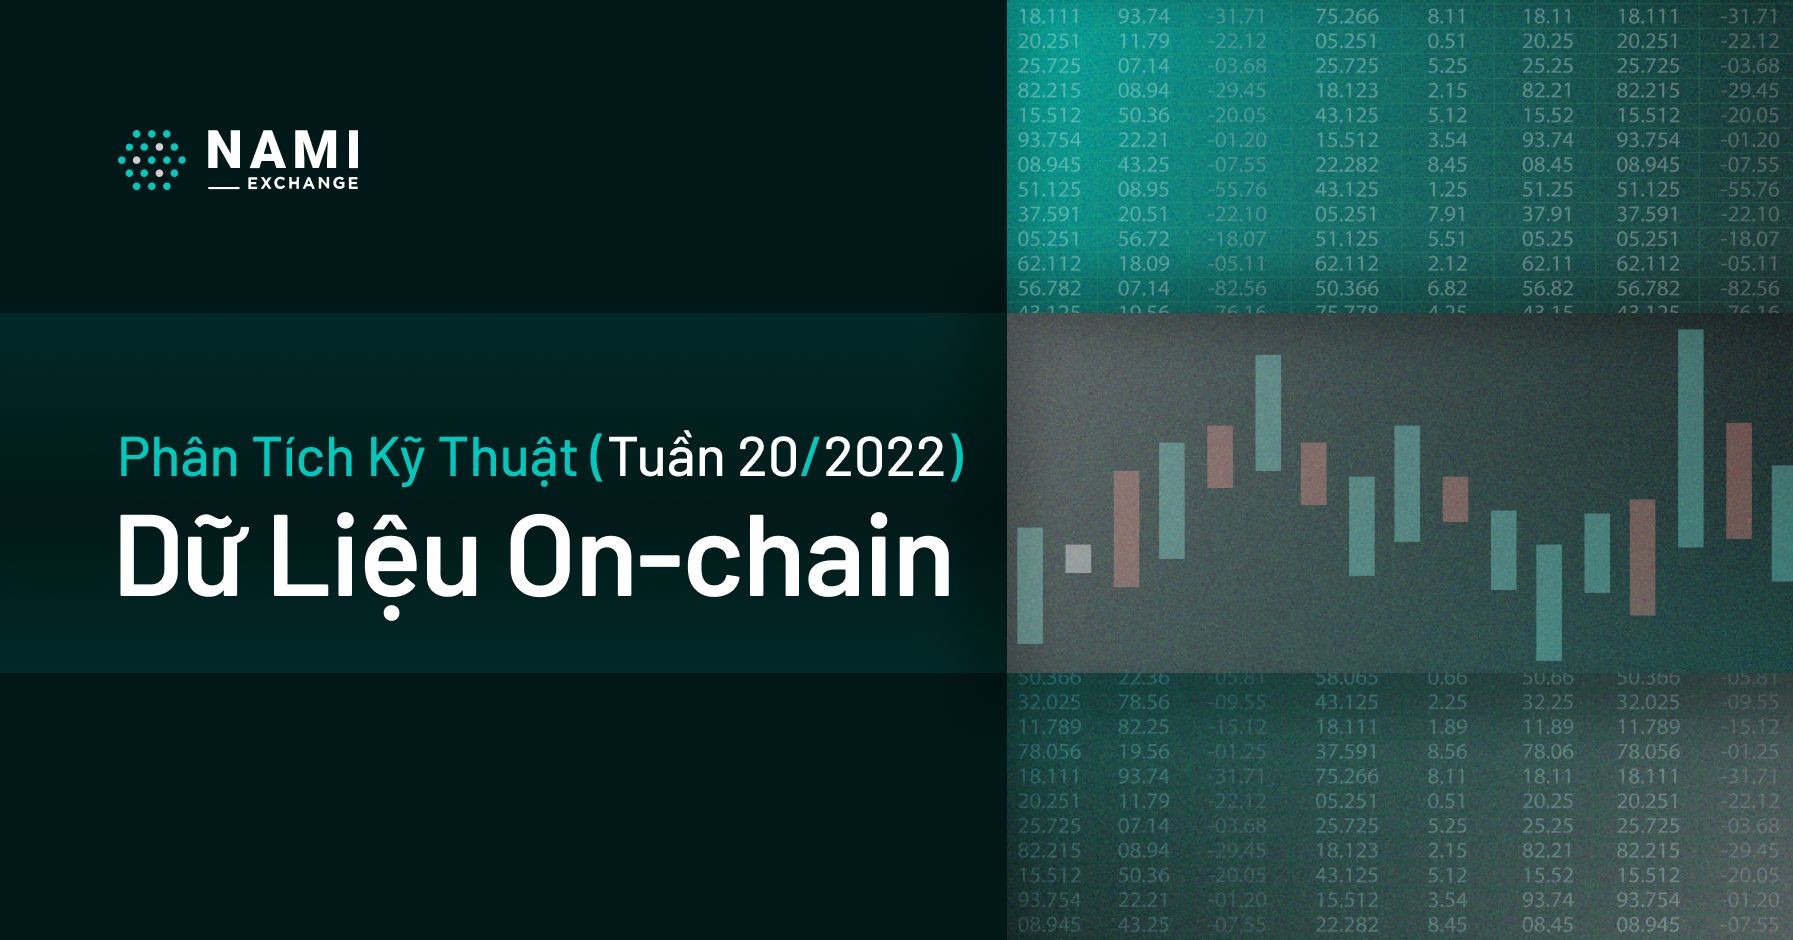 Phân tích dữ liệu On-chain (tuần 20/2022)